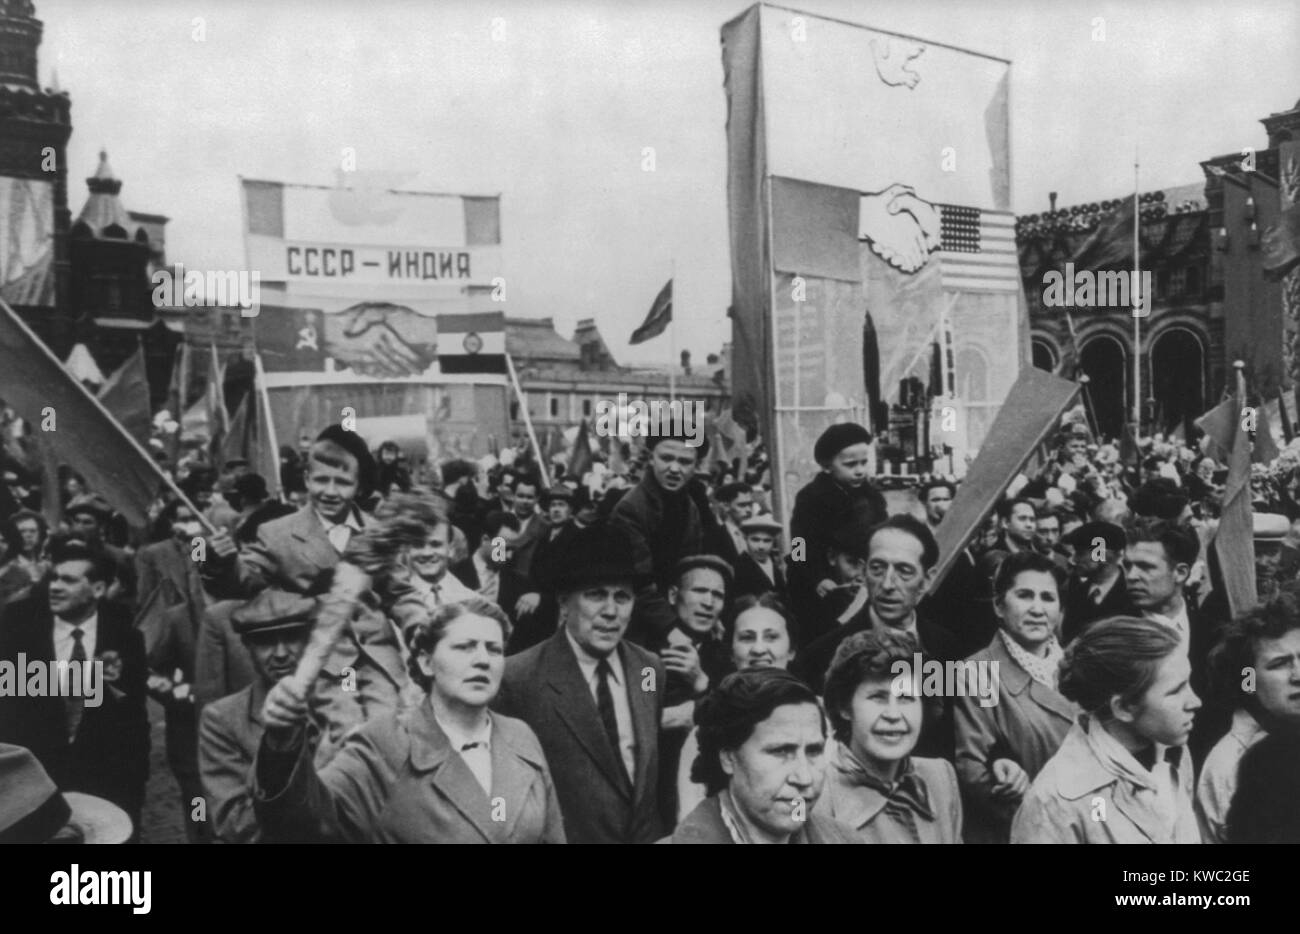 May Day Feier ist Moskau, 1960. Kommunistische Demonstration der Vertreter der arbeitenden Menschen auf dem Roten Platz. (BSLOC 2015 2 260) Stockfoto